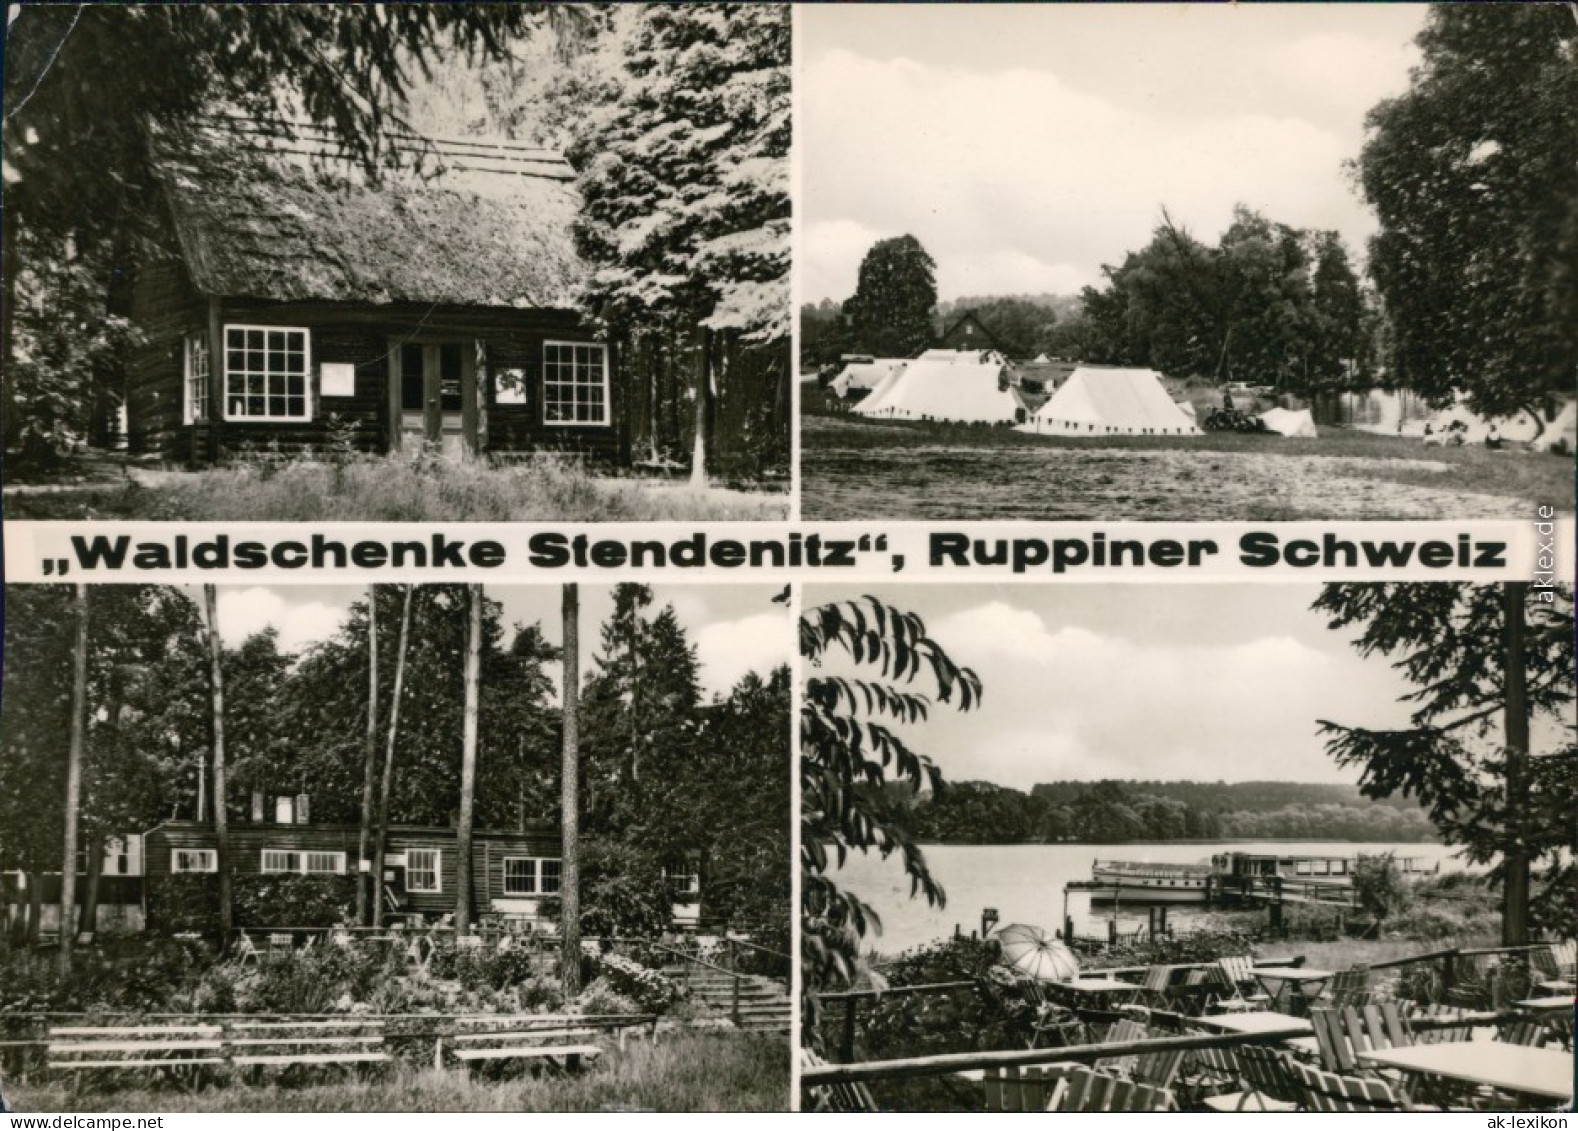 Ansichtskarte Neuruppin Ruppiner Schweiz - Waldschenke Stendenitz 1968 - Neuruppin